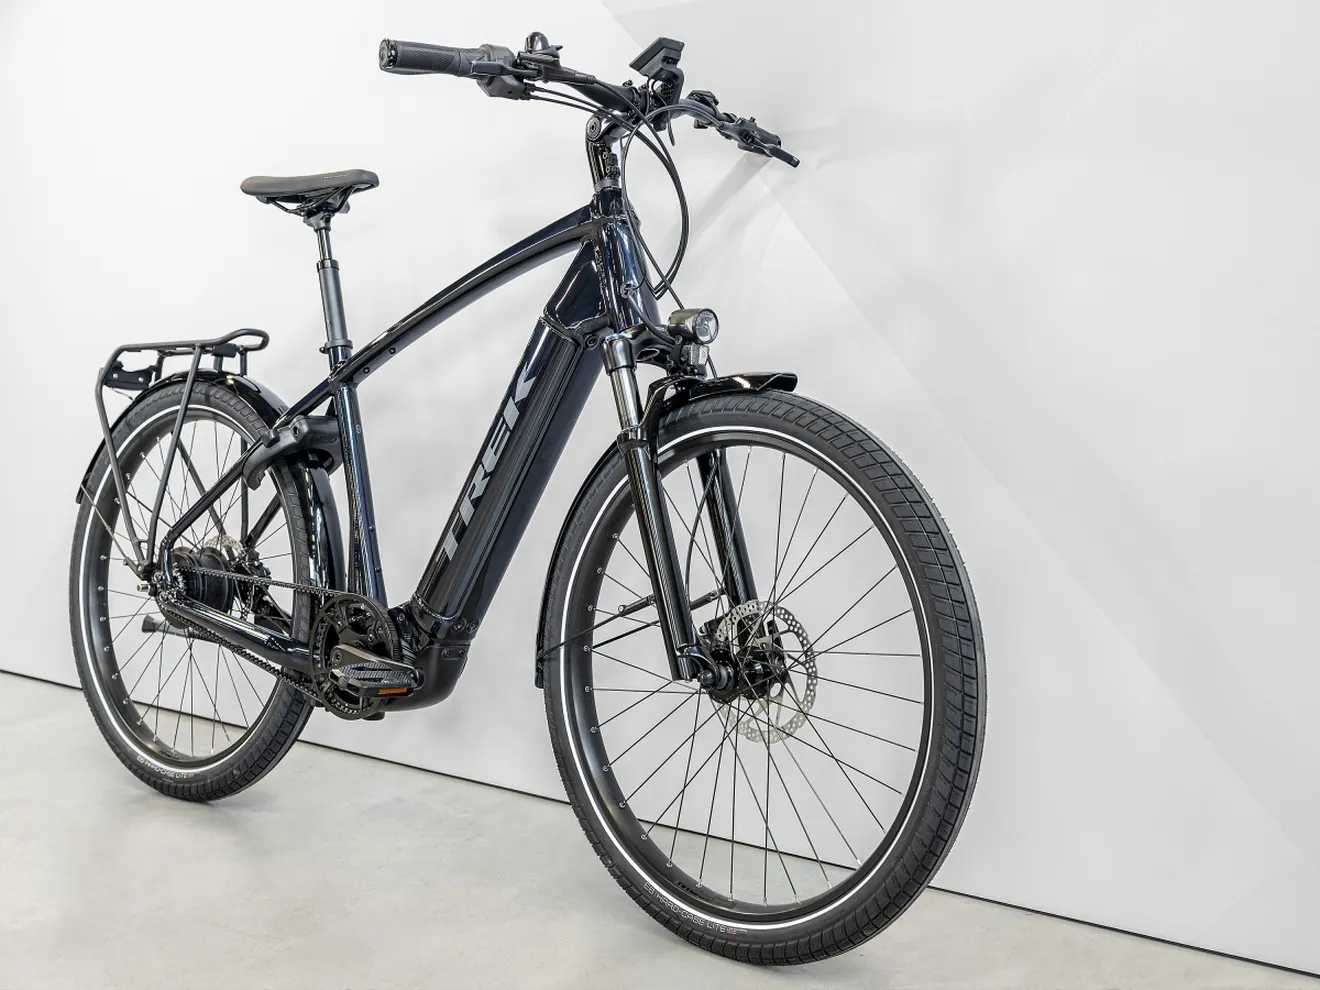 La nueva Trek Allant+ es una bici eléctrica de uso mixto con hasta 125 km de autonomía